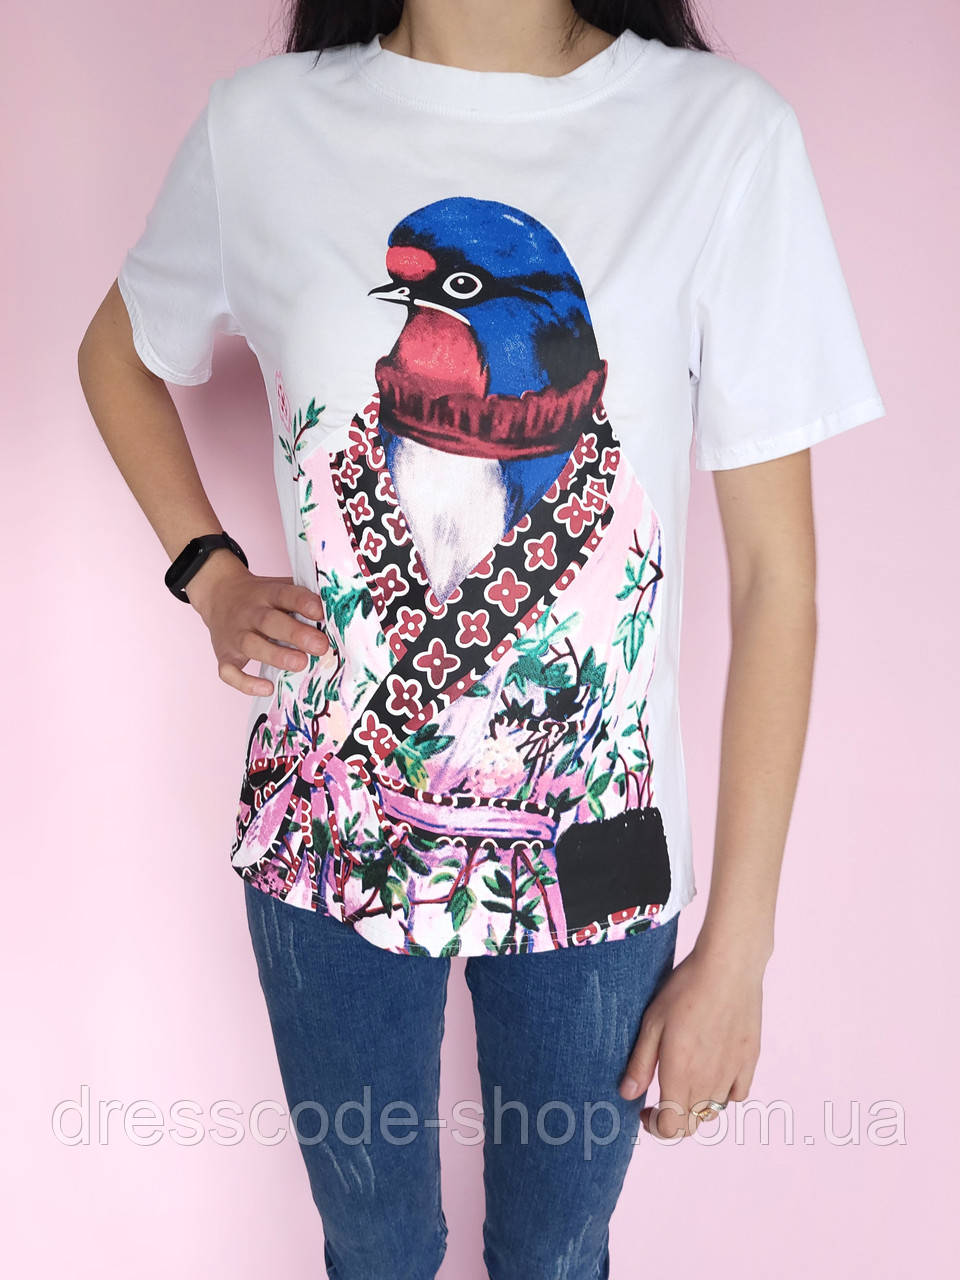 Стильна футболка з яскравим оригінальним малюнком птиці